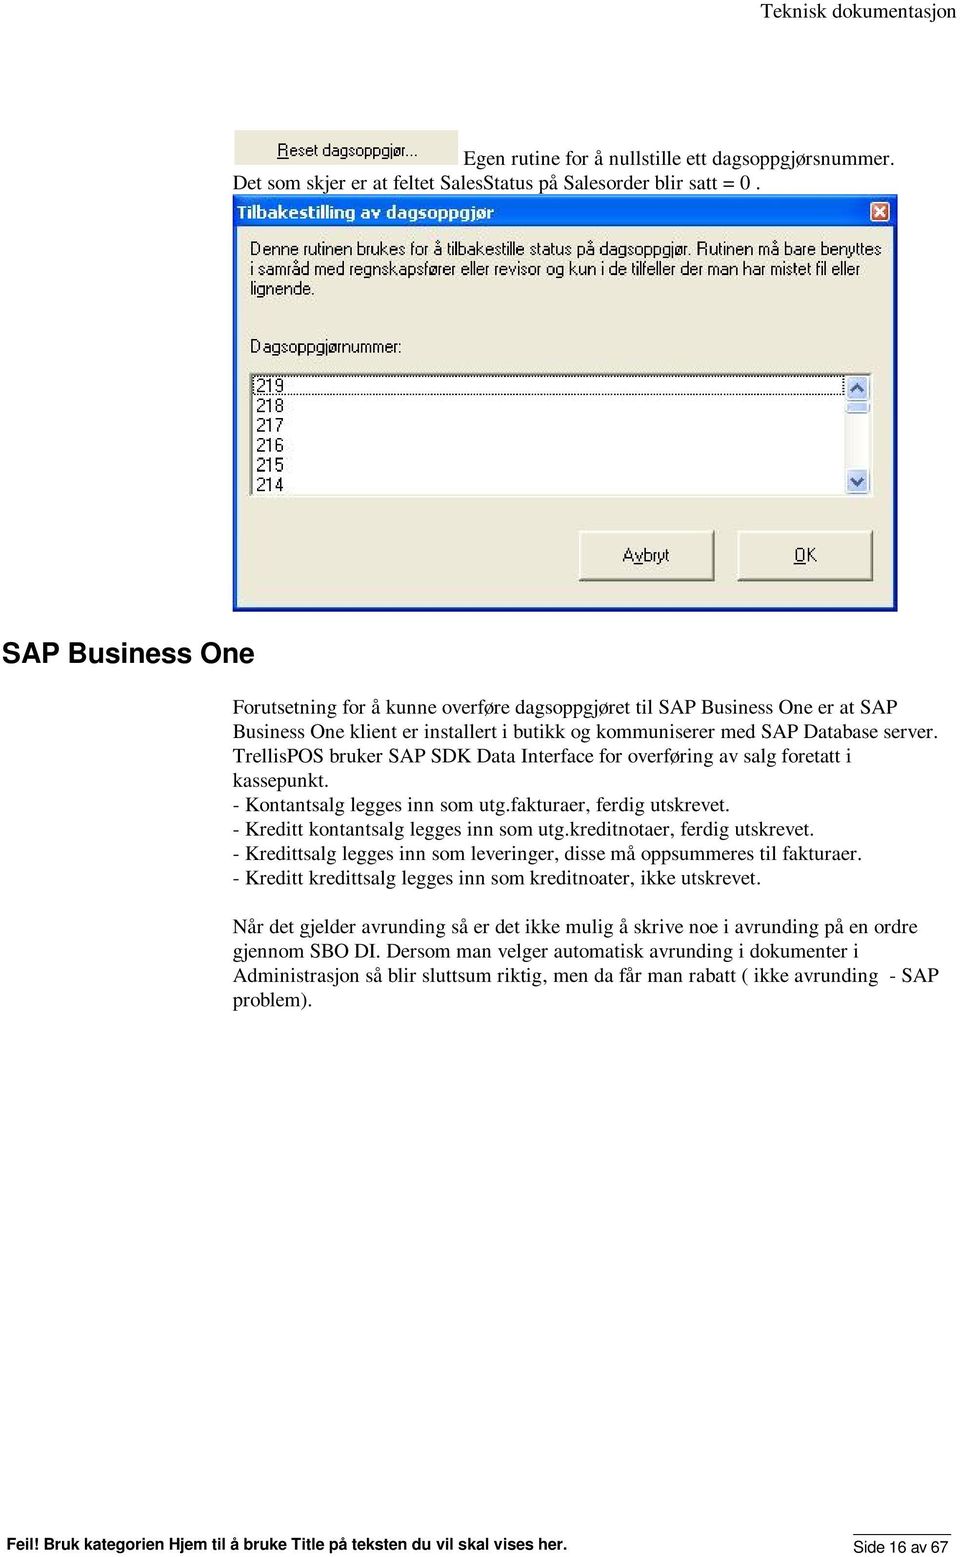 TrellisPOS bruker SAP SDK Data Interface for overføring av salg foretatt i kassepunkt. - Kontantsalg legges inn som utg.fakturaer, ferdig utskrevet. - Kreditt kontantsalg legges inn som utg.